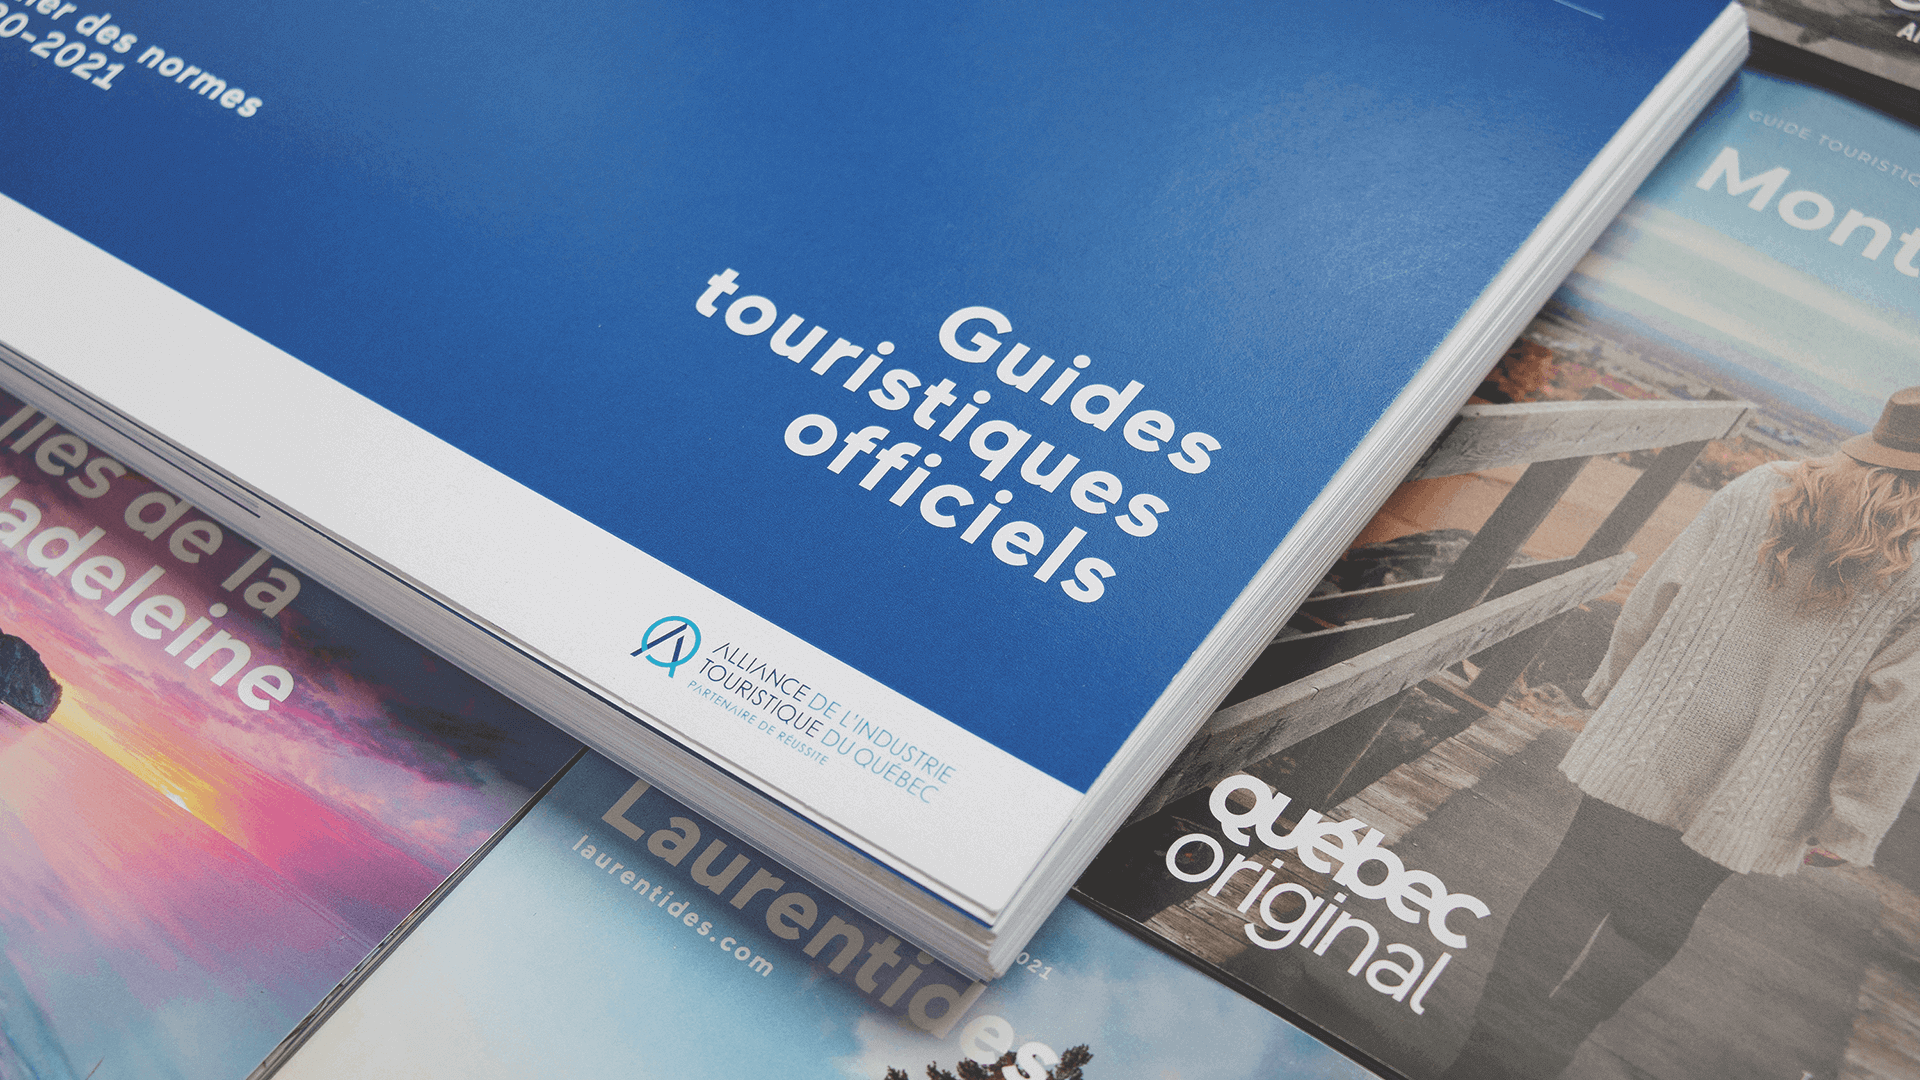 Cahier de normes graphiques | Guides touristiques officiels 2020-2021 | Alliance de l'industrie touristique du Québec